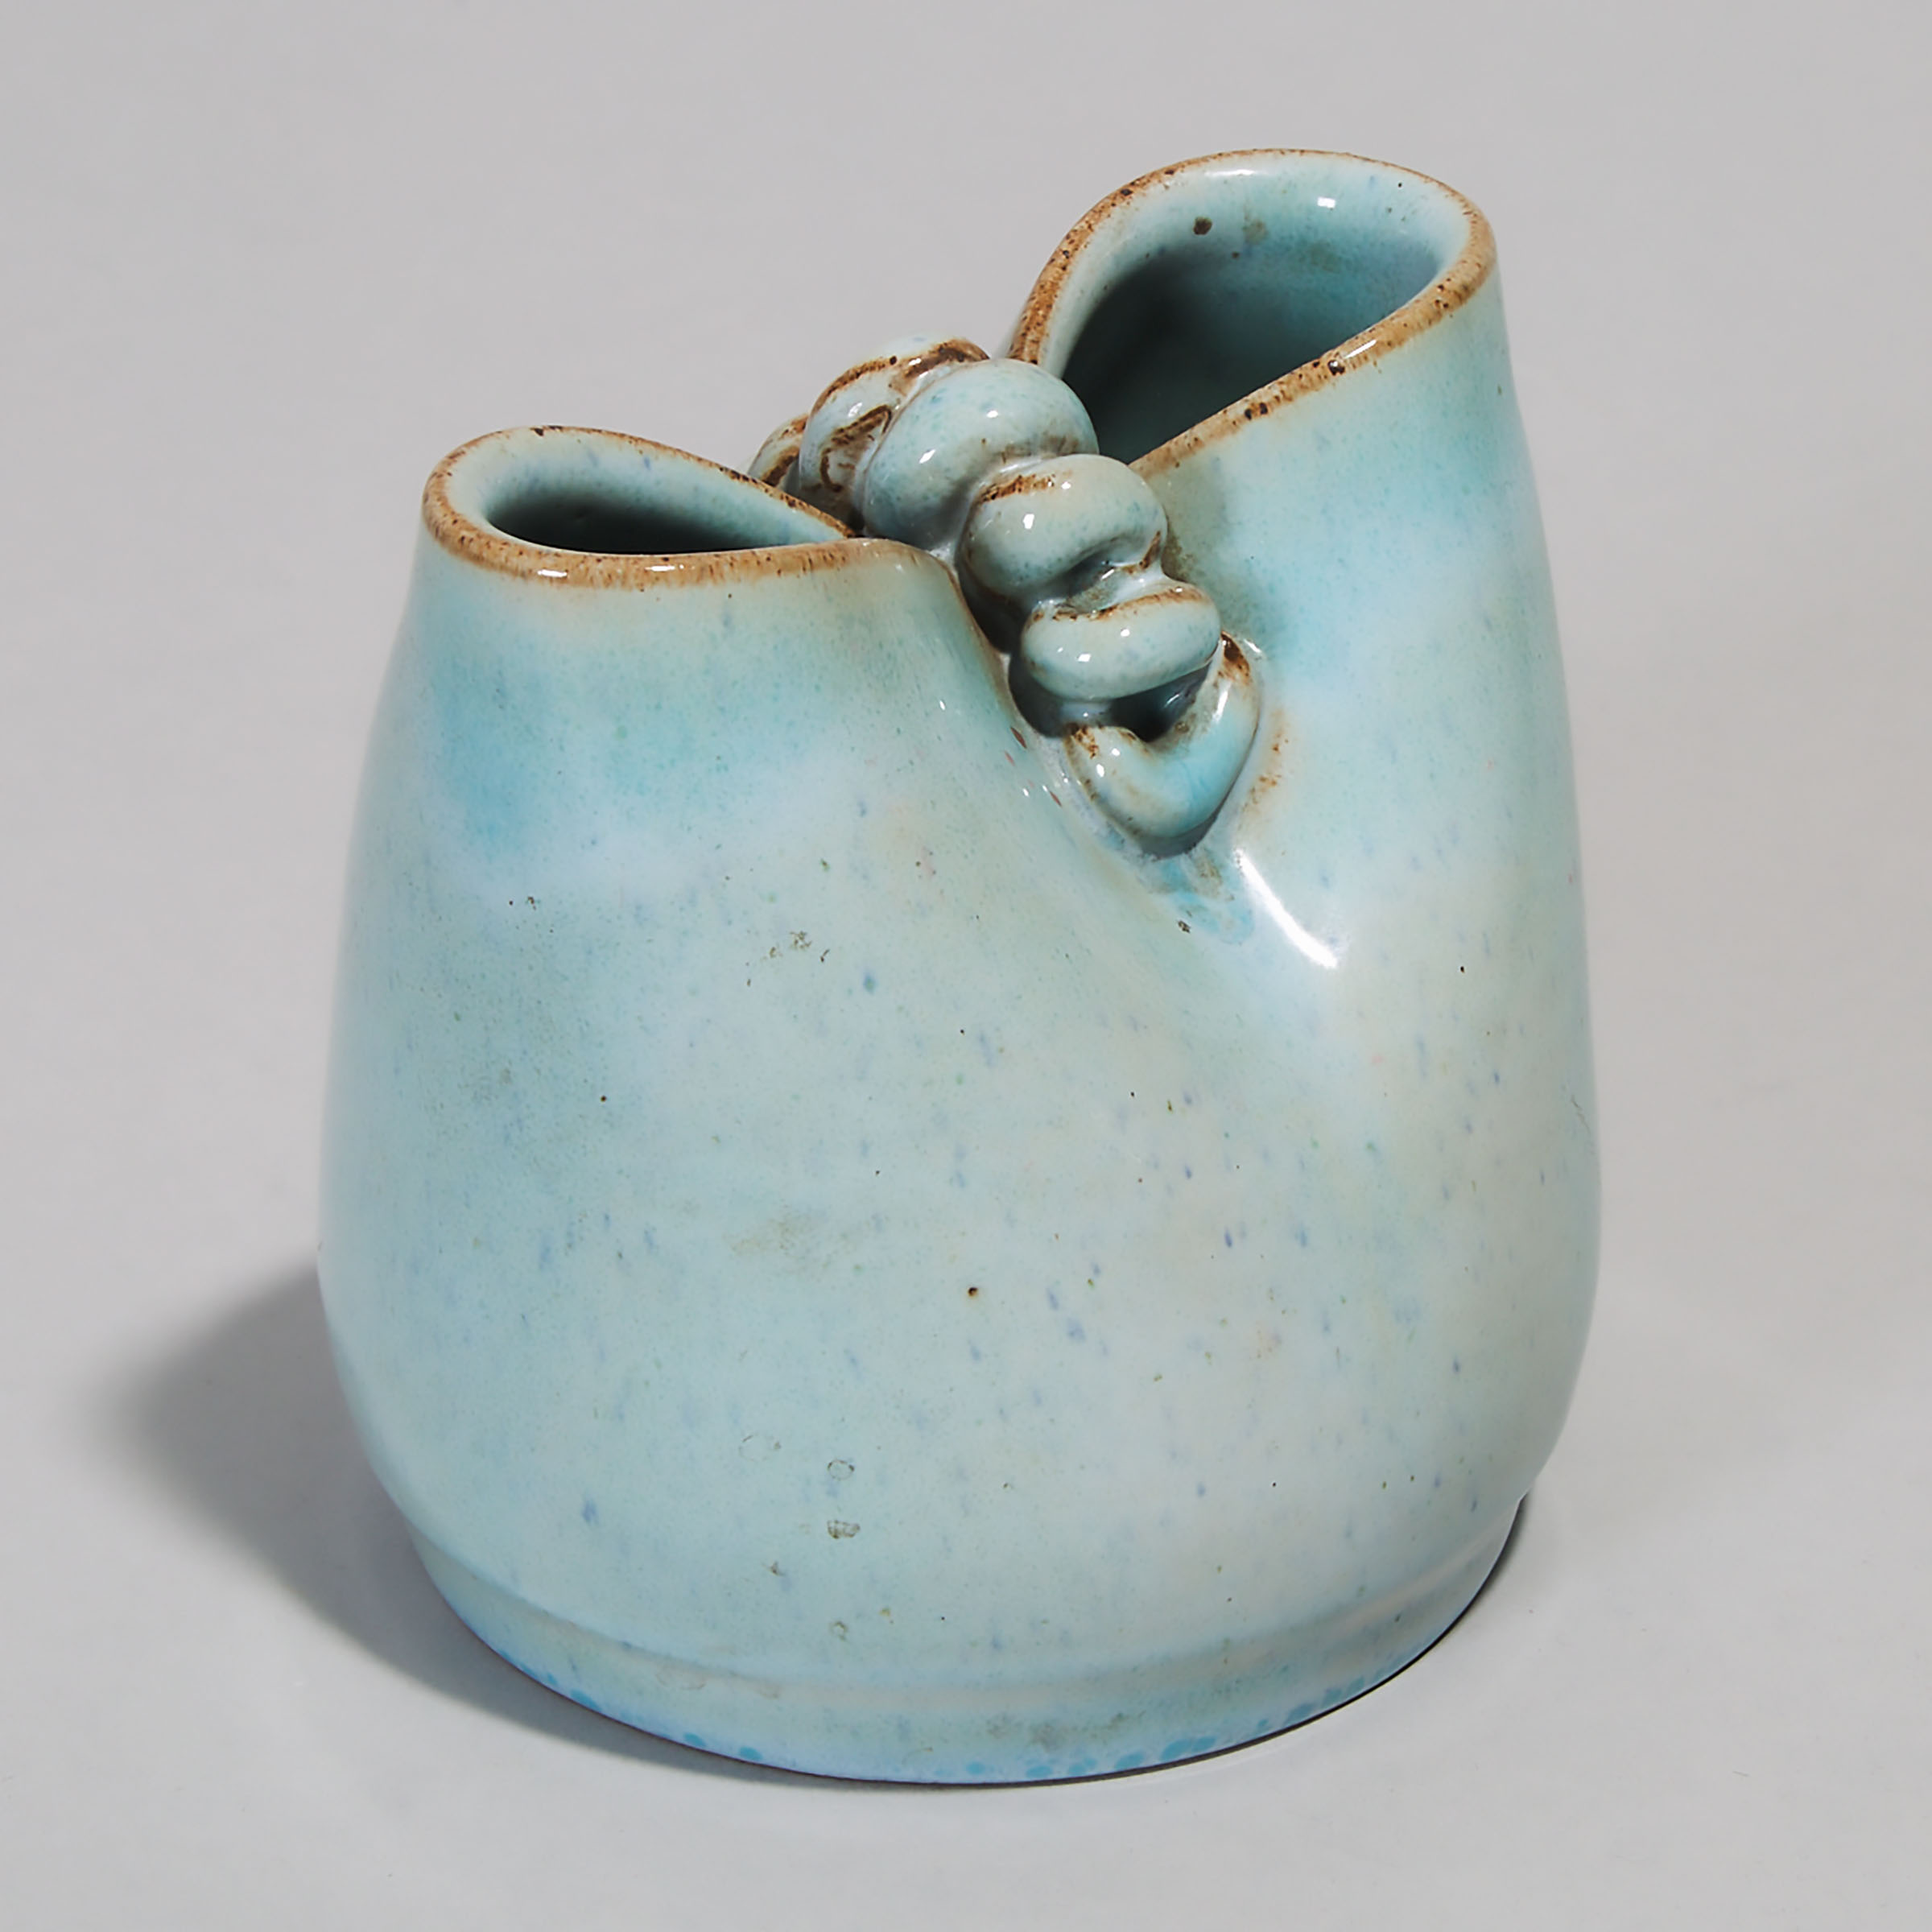 Deichmann Mottled Blue Glazed Stoneware 'Bag' Vase, Kjeld & Erica Deichmann, mid-20th century